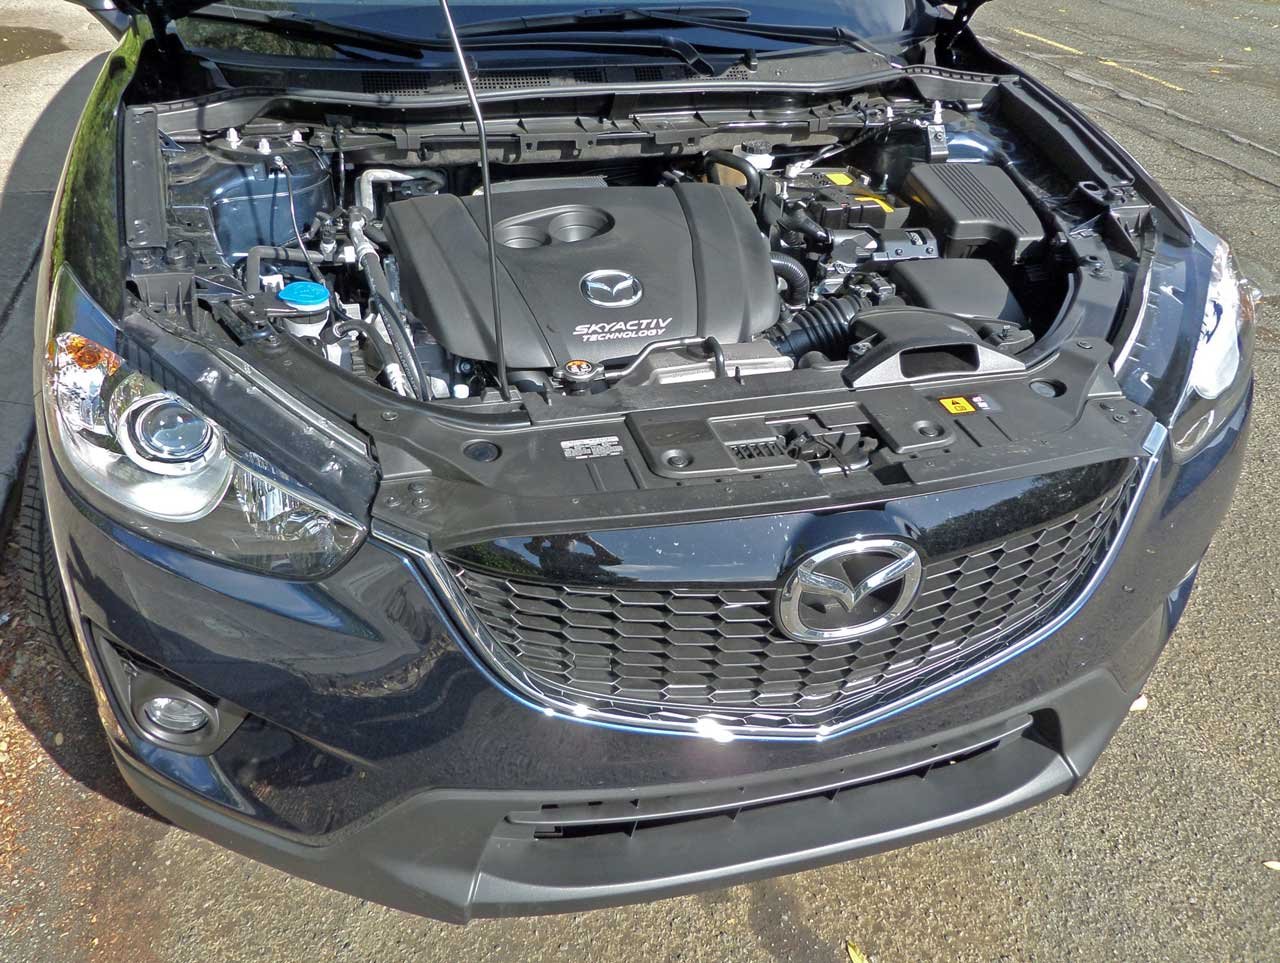 Двигатель мазда cx5. Мазда СХ-5 под капотом. Mazda CX 5 под капотом. Двигатель Mazda CX-5 2.5 2013. Двигатель Мазда cx5 2.5.